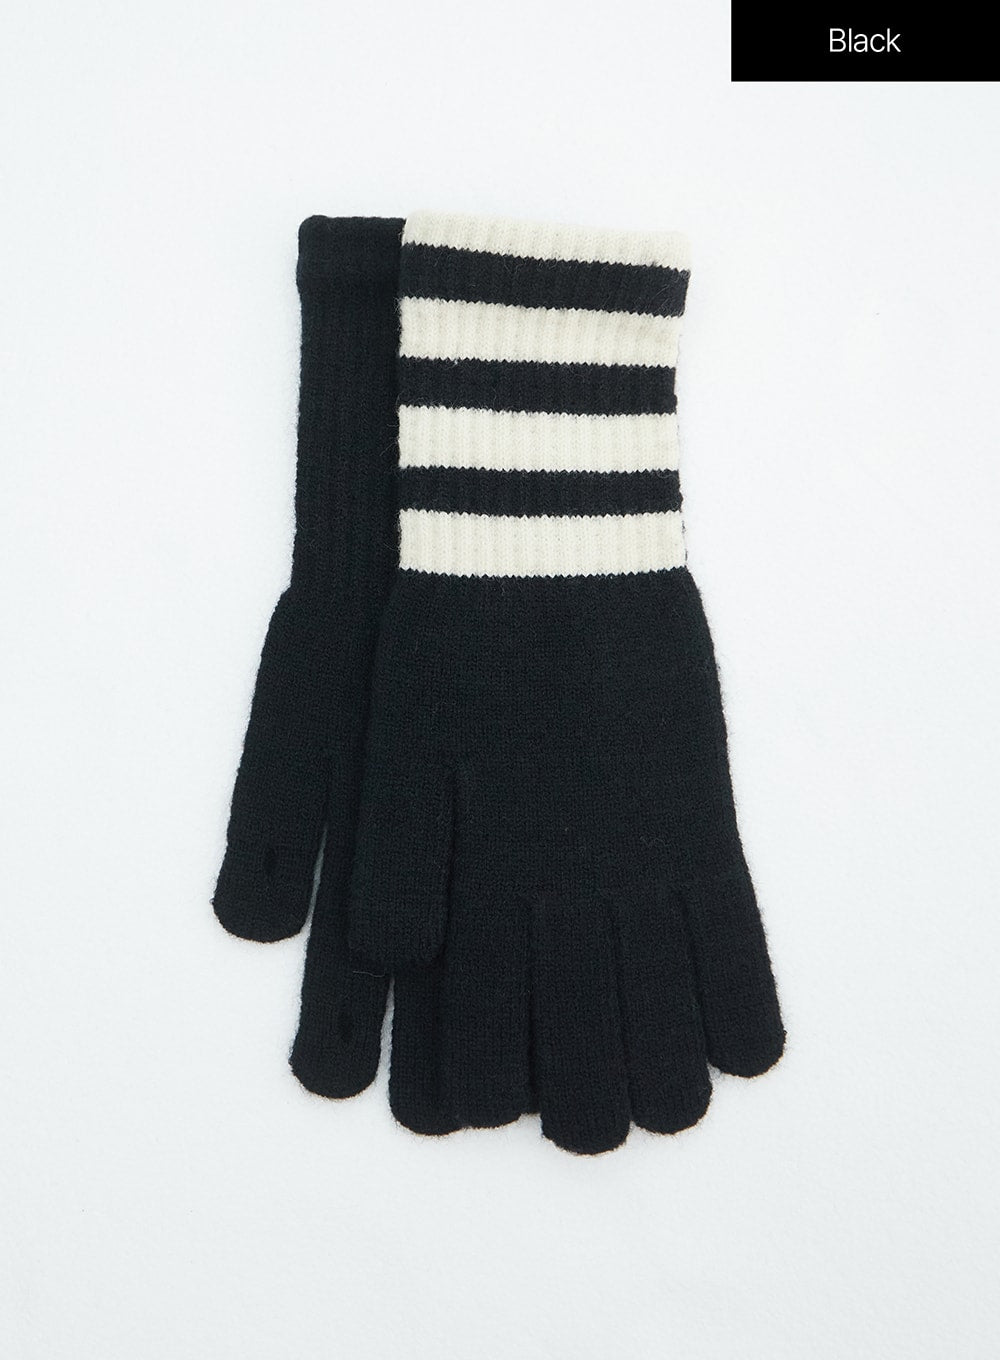 stripe-knit-gloves-in317 / Black